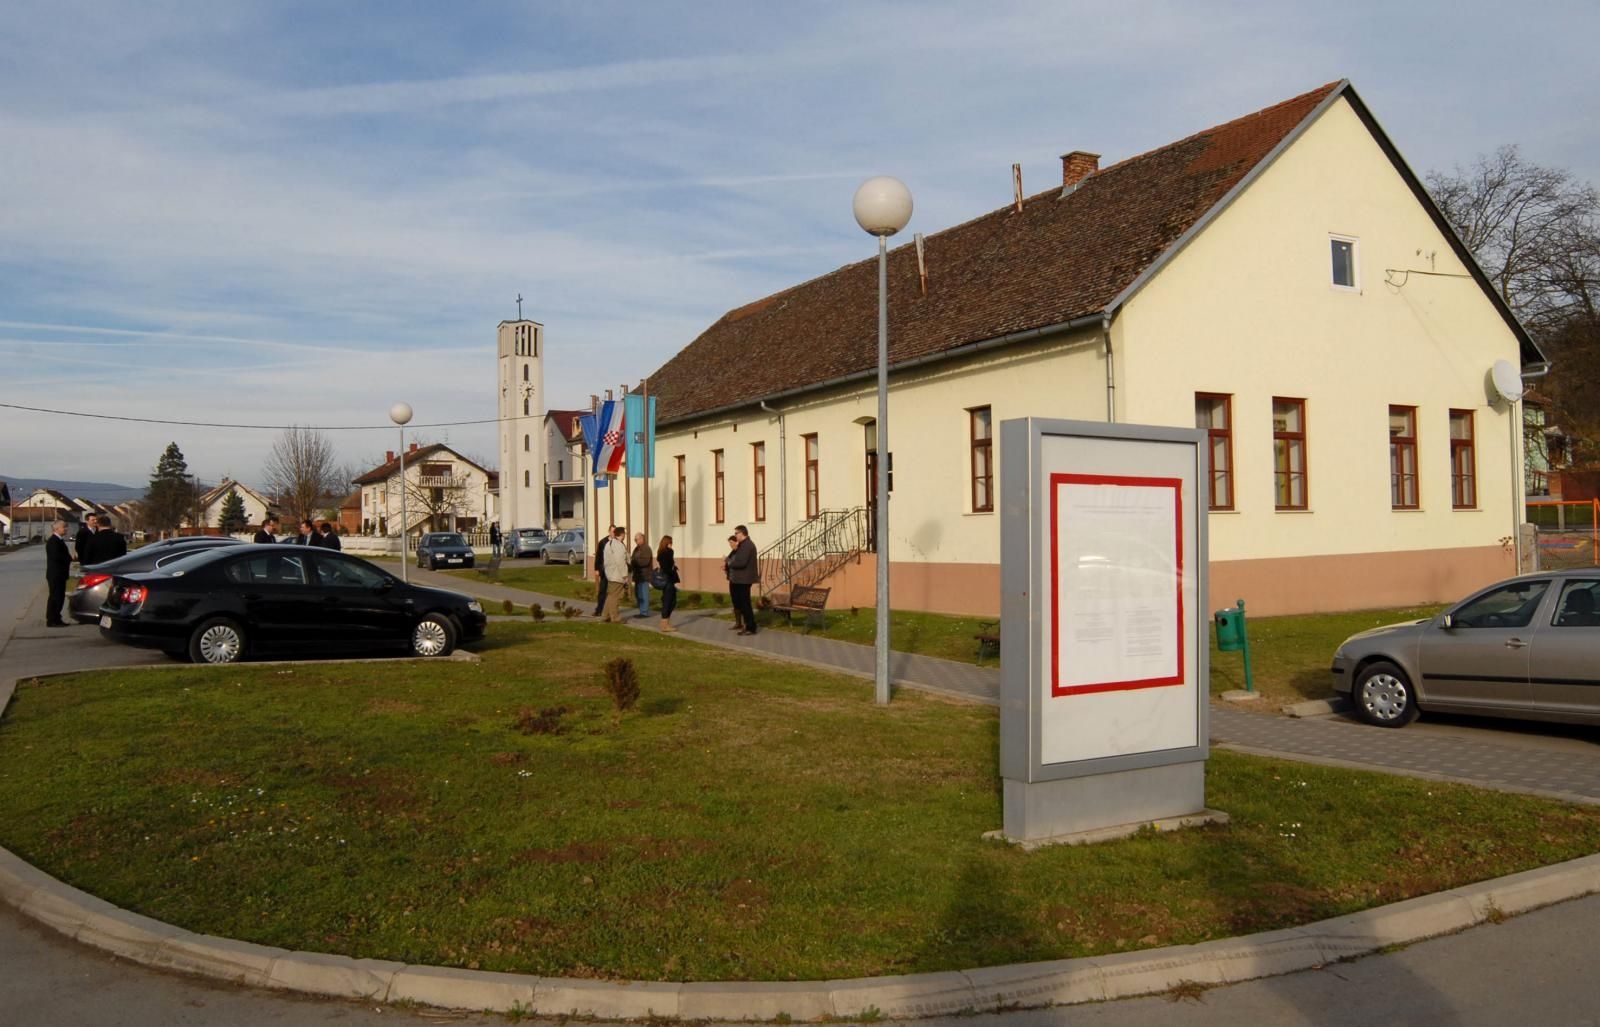 18.01.2014., Resetari - Resetari su opcina u Brodsko-posavskoj zupaniji.
Photo: Ivica Galovic/PIXSELL